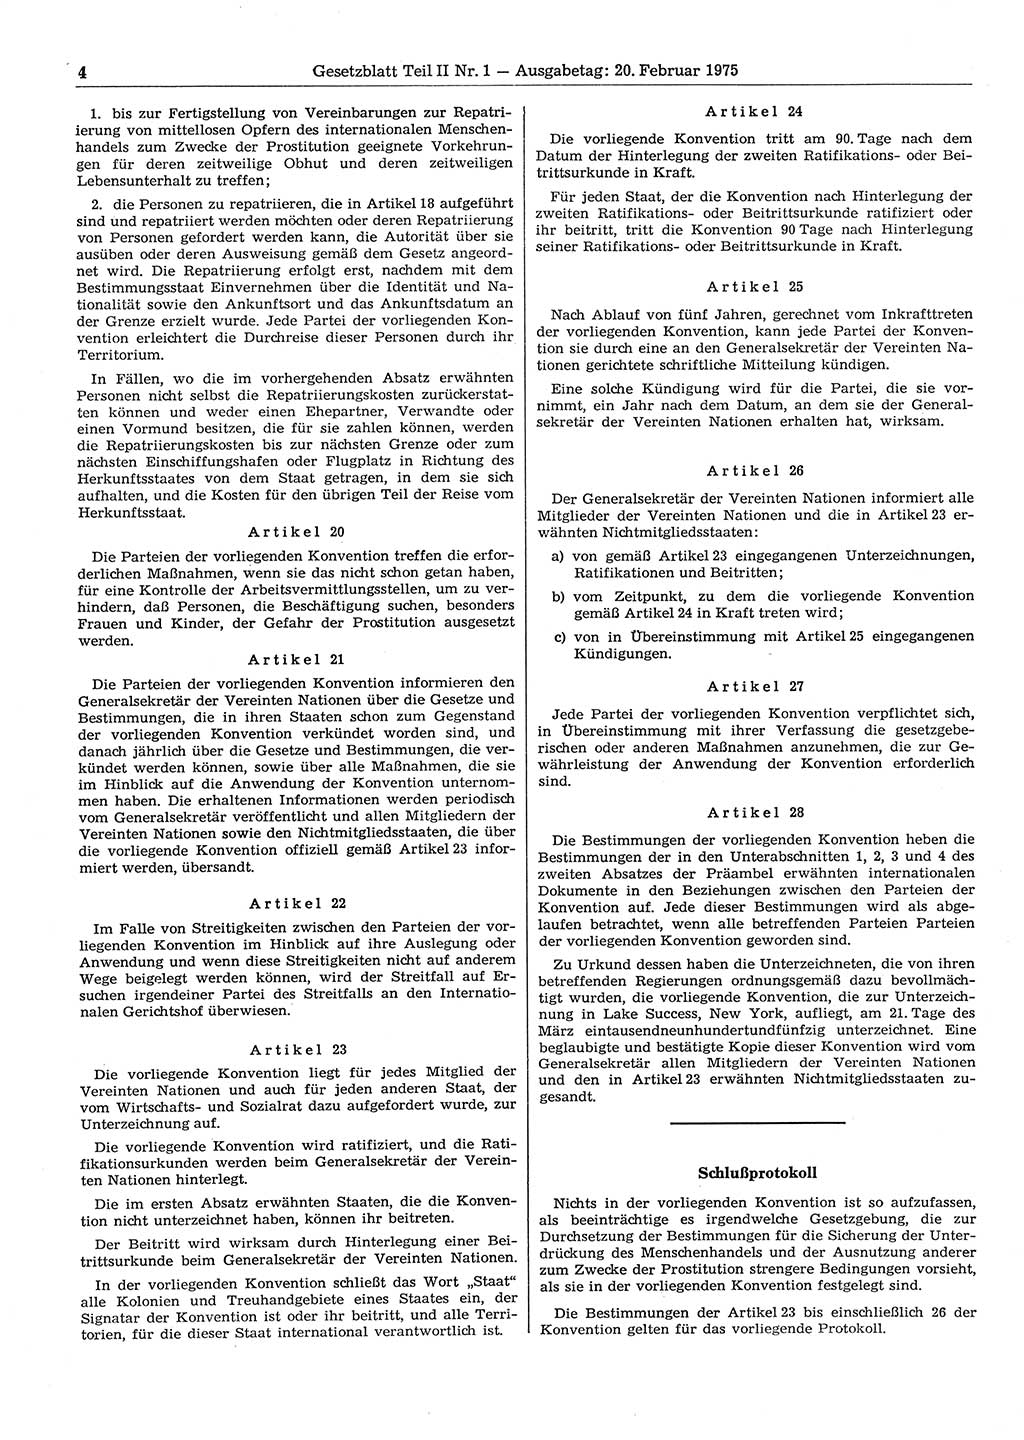 Gesetzblatt (GBl.) der Deutschen Demokratischen Republik (DDR) Teil ⅠⅠ 1975, Seite 4 (GBl. DDR ⅠⅠ 1975, S. 4)